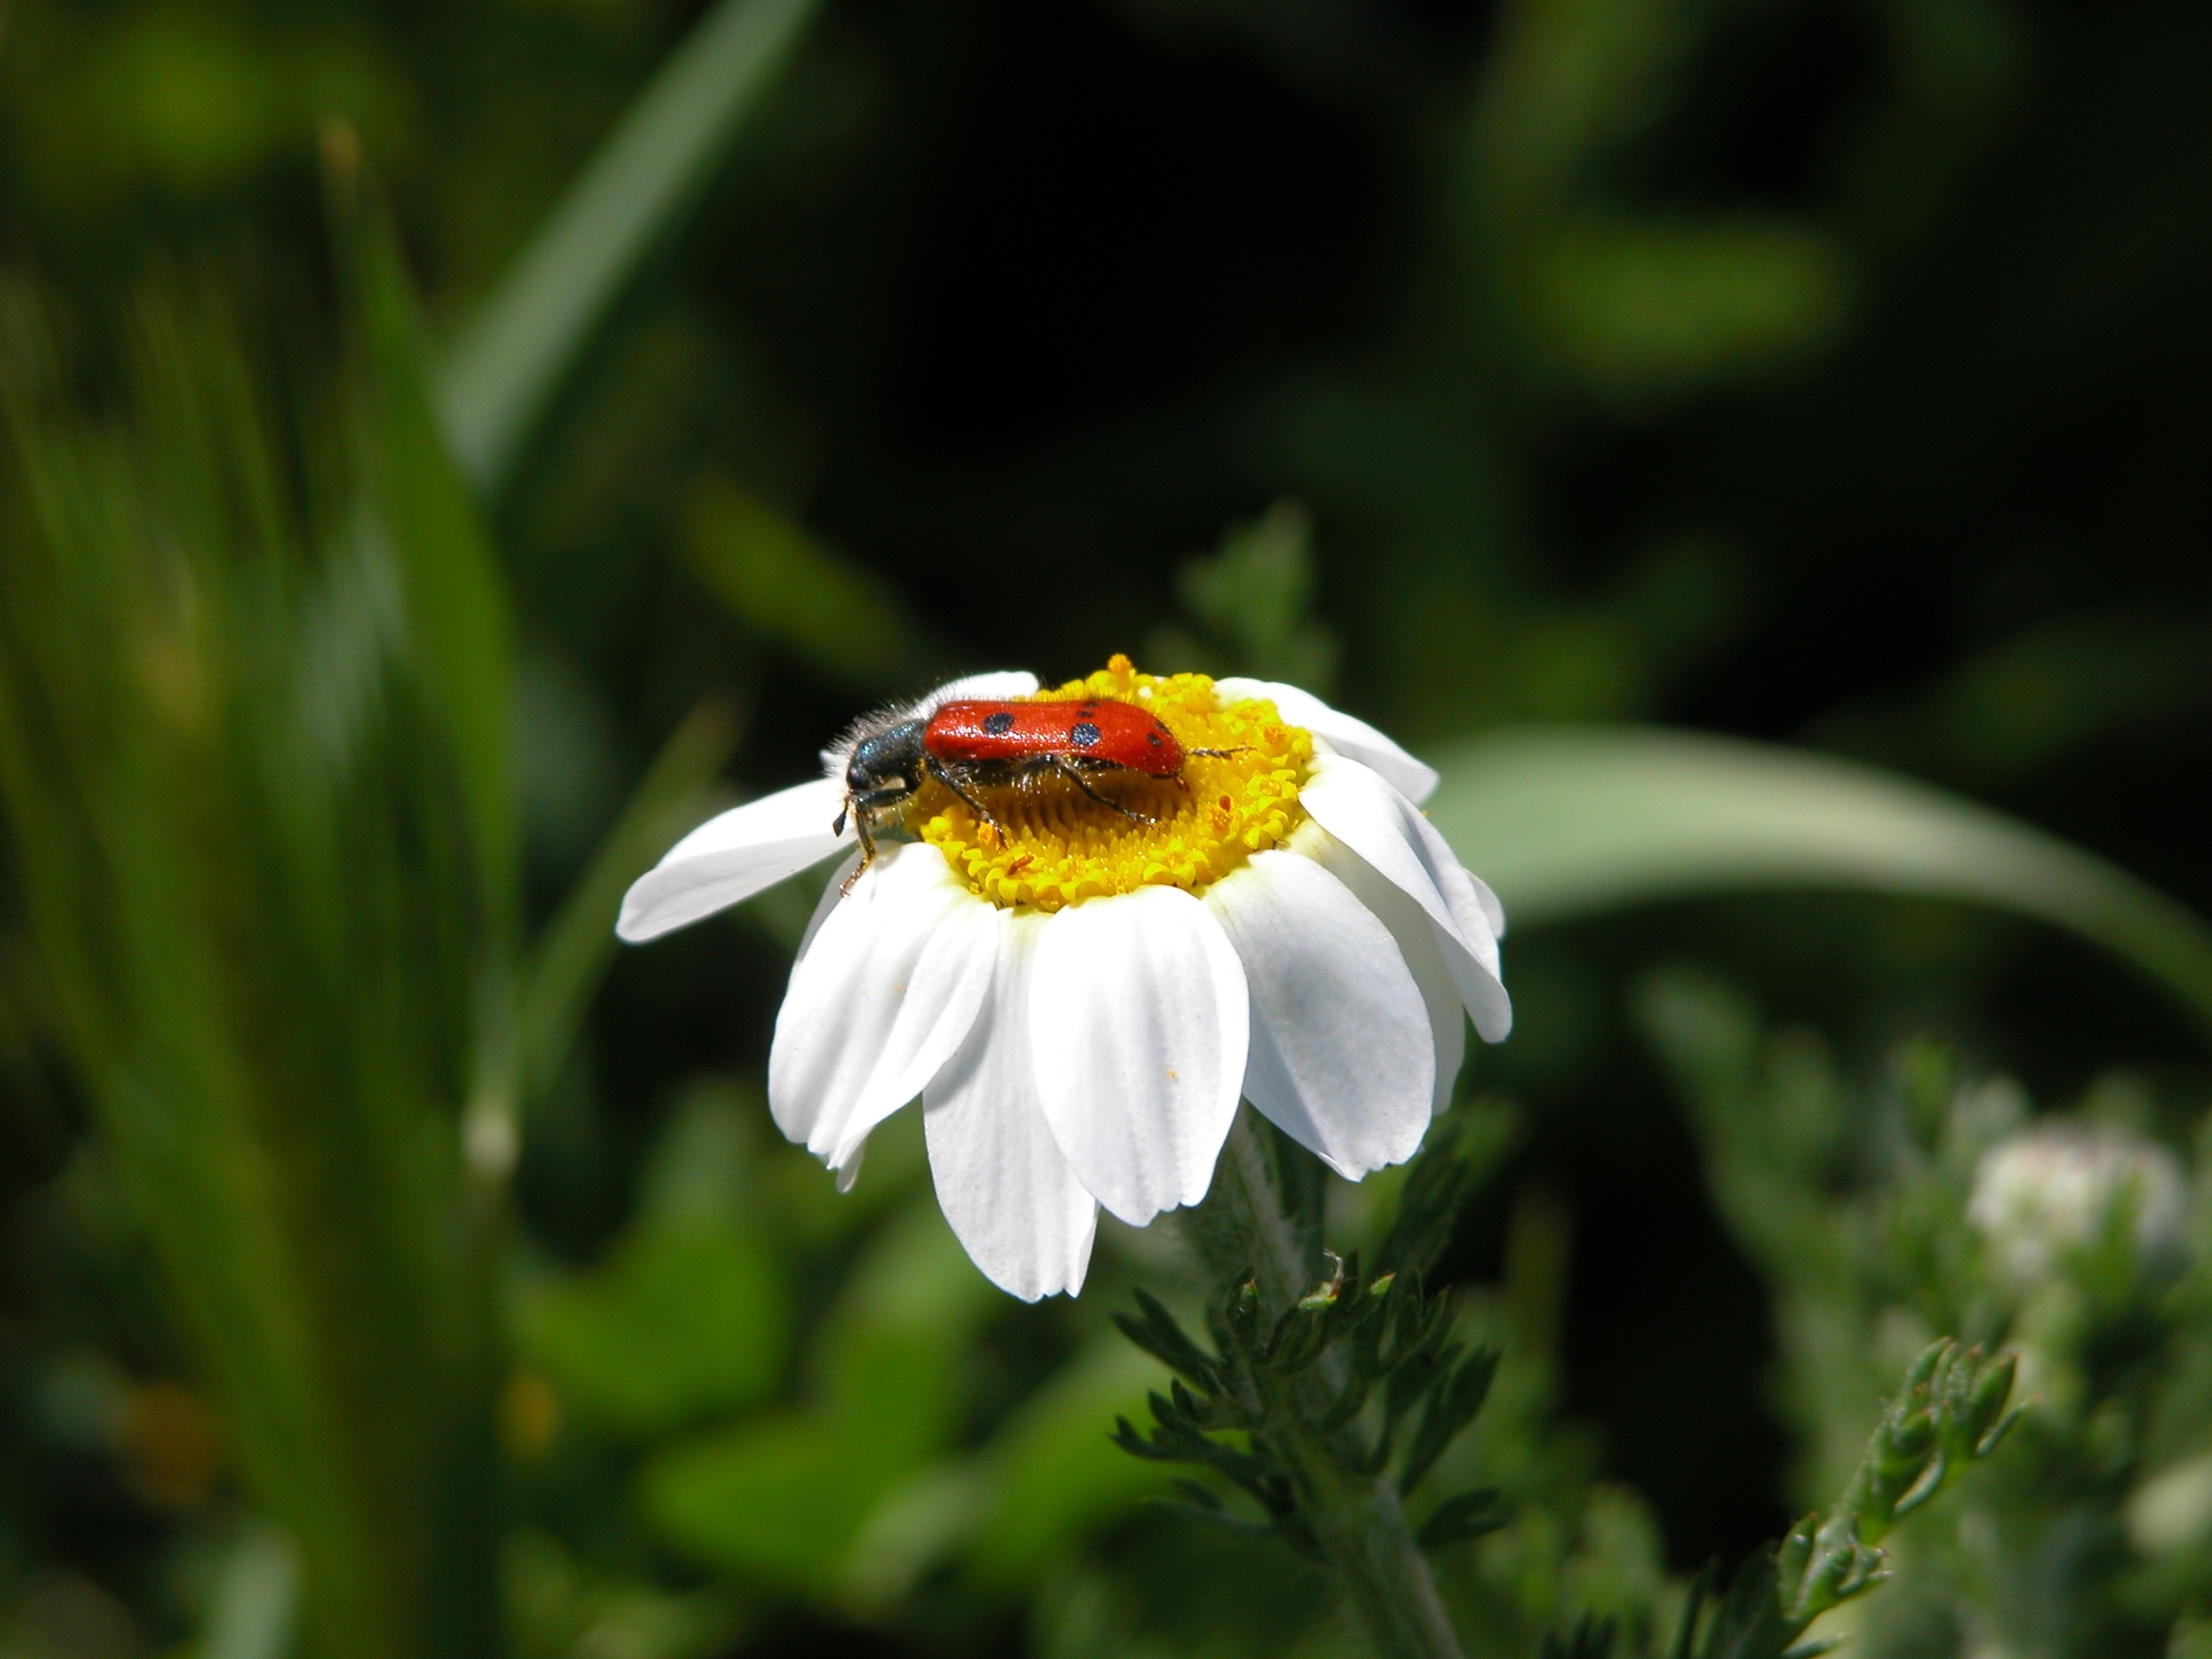 blister beetle on white petaled flower